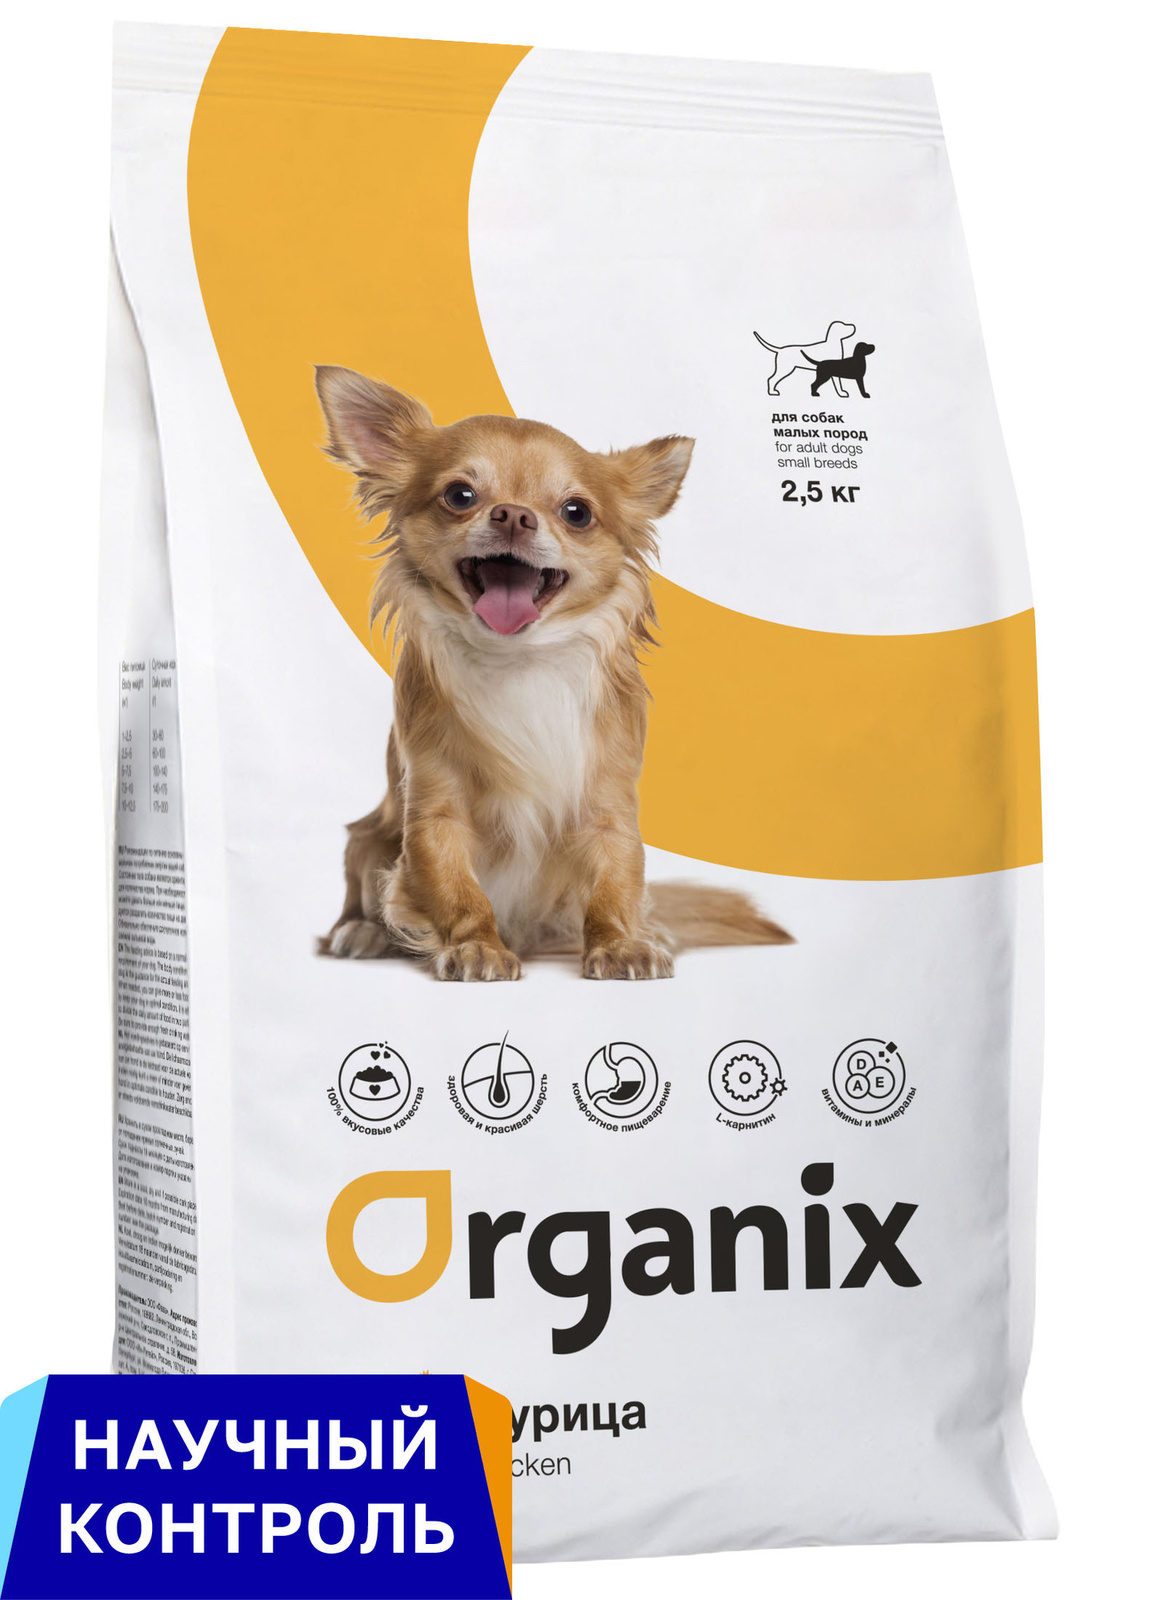 Organix  сухой корм для собак малых пород, с курицей (800 г) Organix  сухой корм для собак малых пород, с курицей (800 г) - фото 1